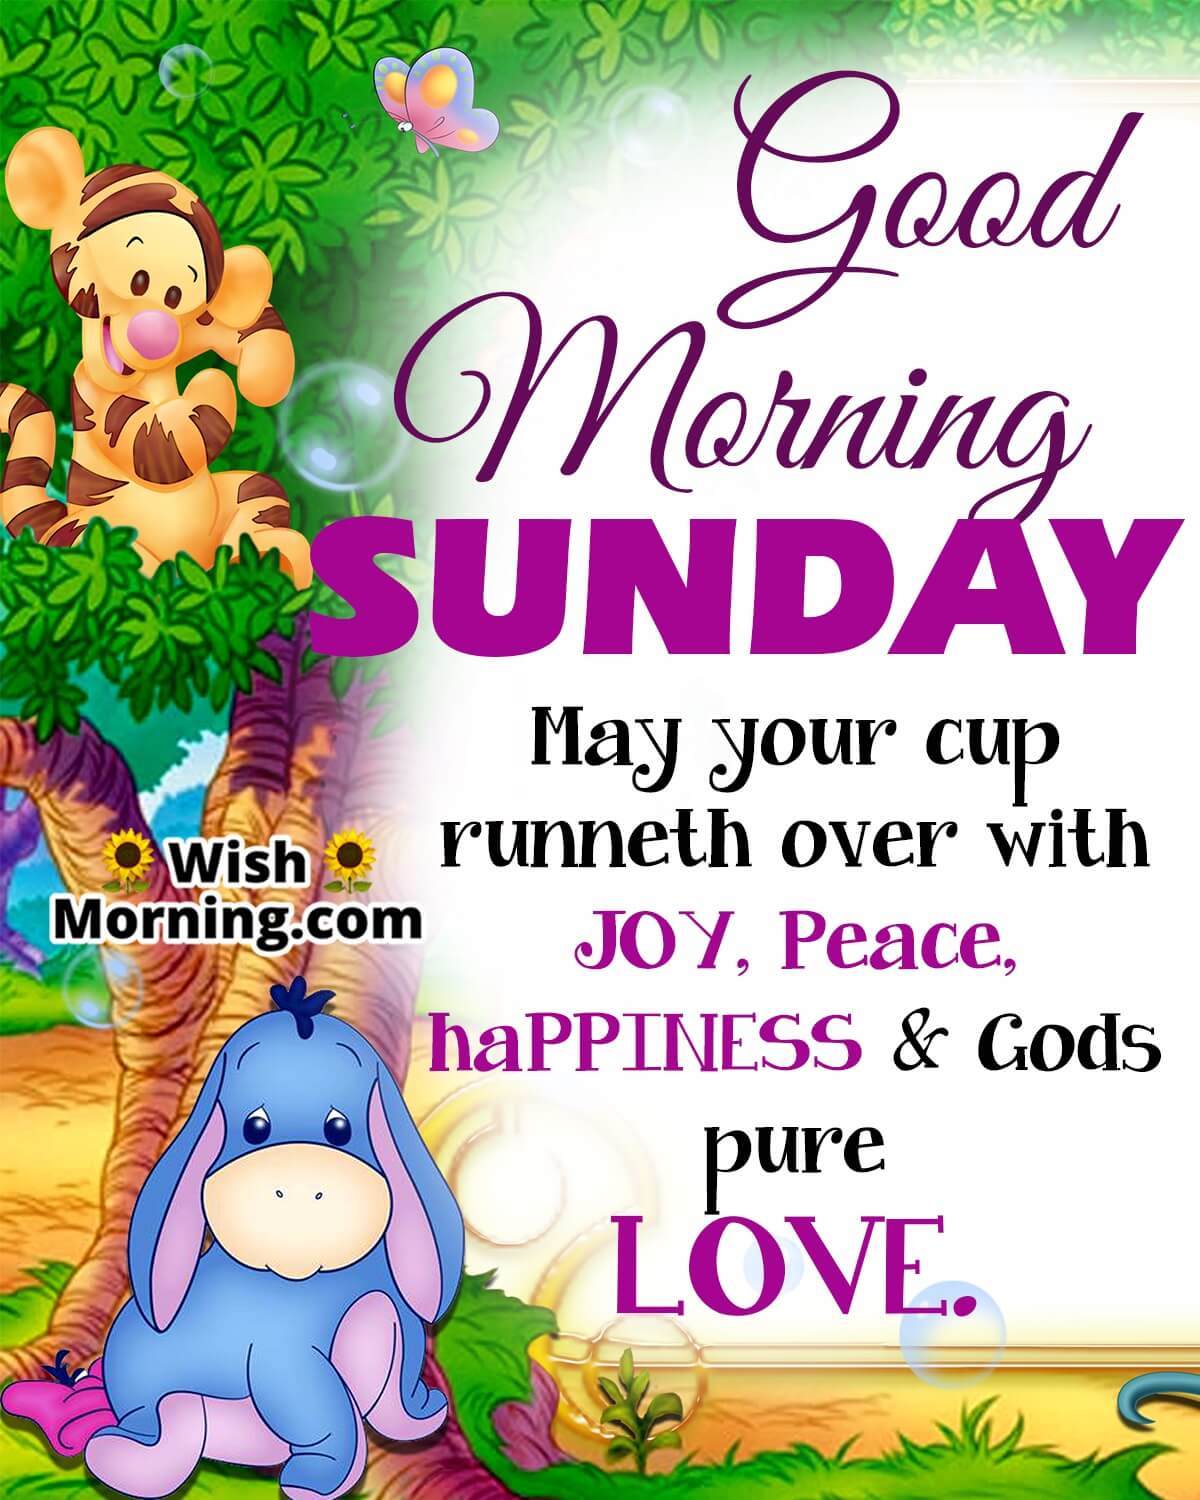 Good Morning Sunday Wish